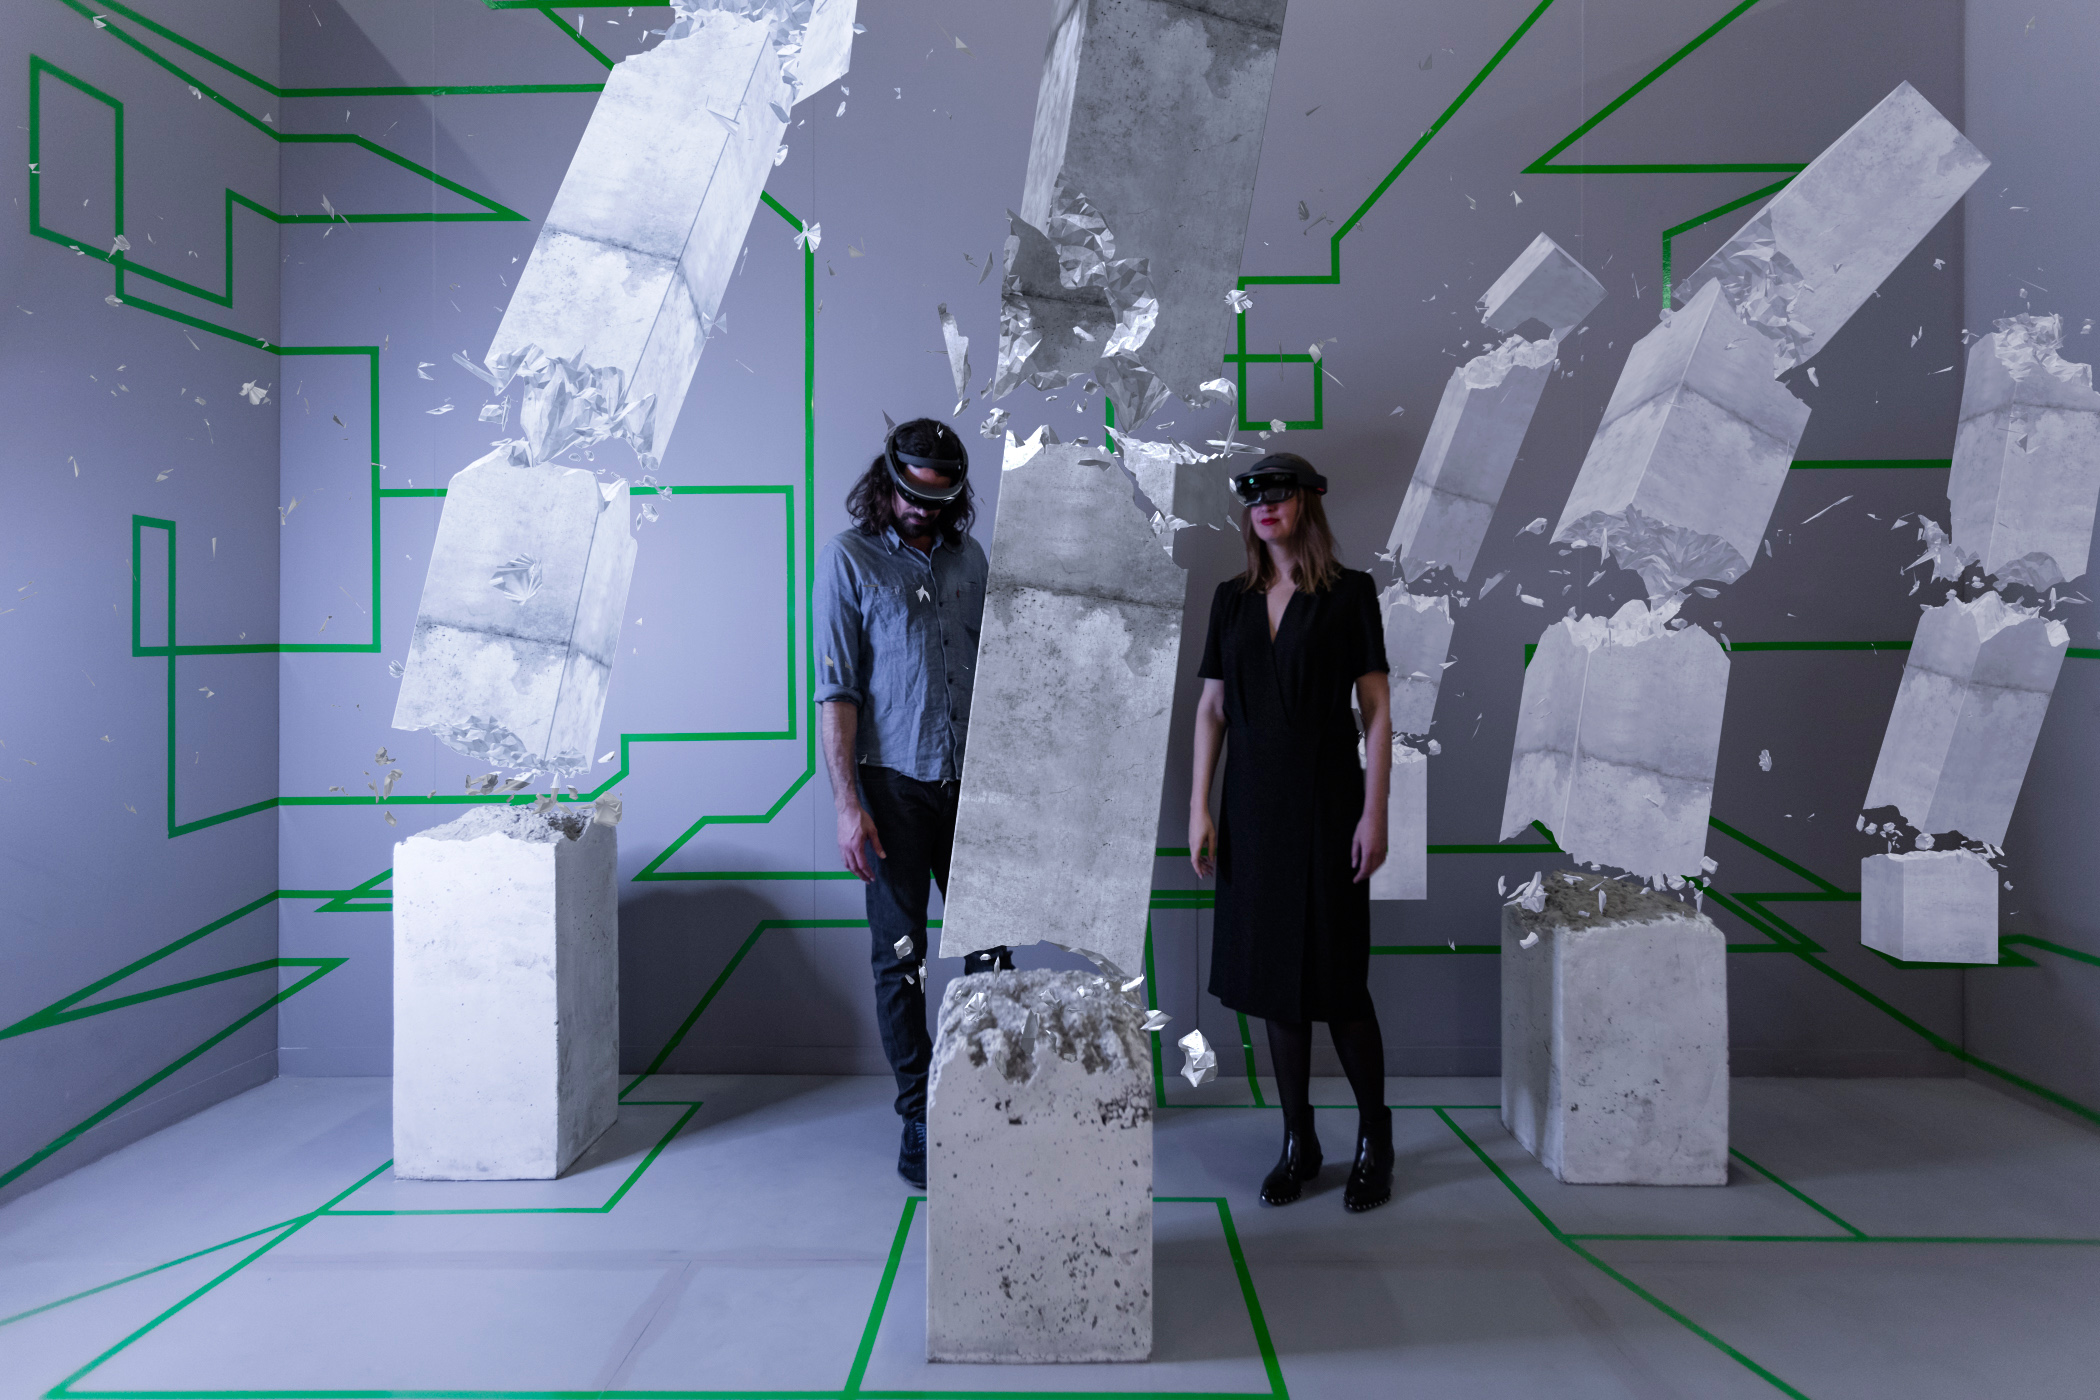 Studio Drift founders Lonneke Gordijn and Ralph Nauta view their original HoloLens work, Concrete Drift